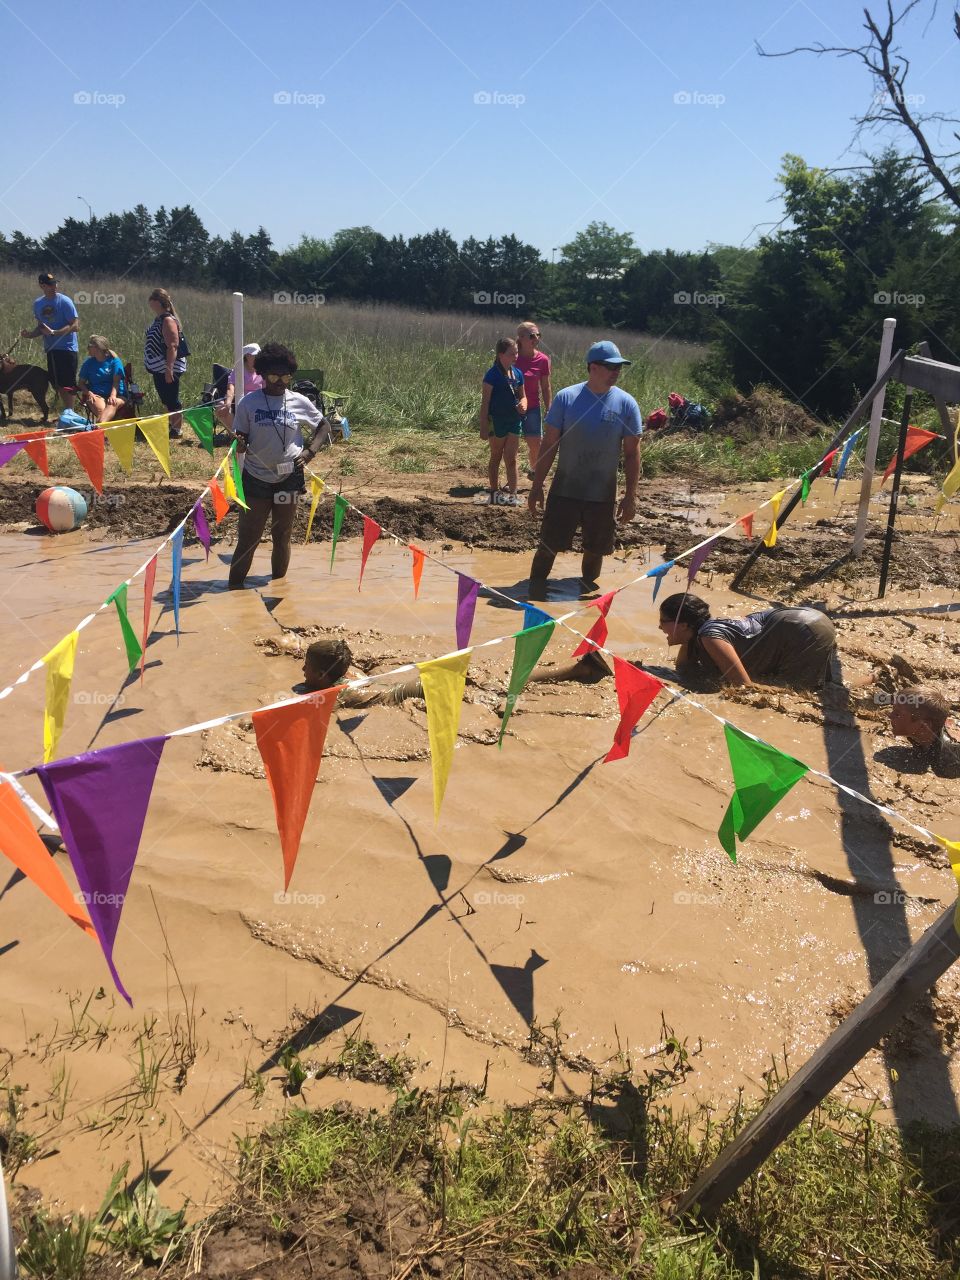 Mud run activities for kids